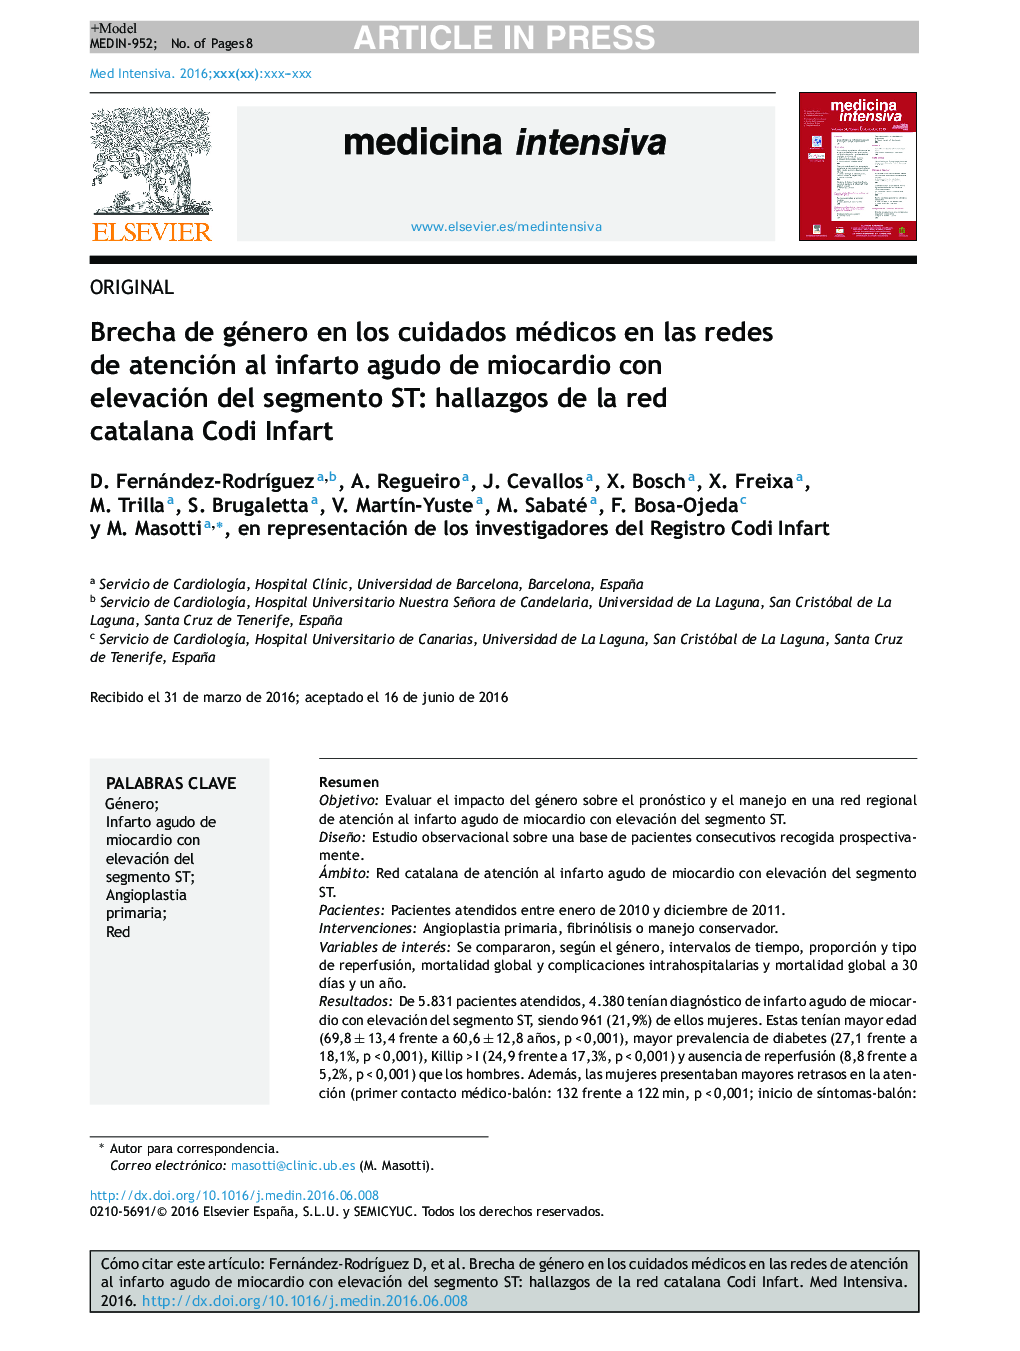 Brecha de género en los cuidados médicos en las redes de atención al infarto agudo de miocardio con elevación del segmento ST: hallazgos de la red catalana Codi Infart